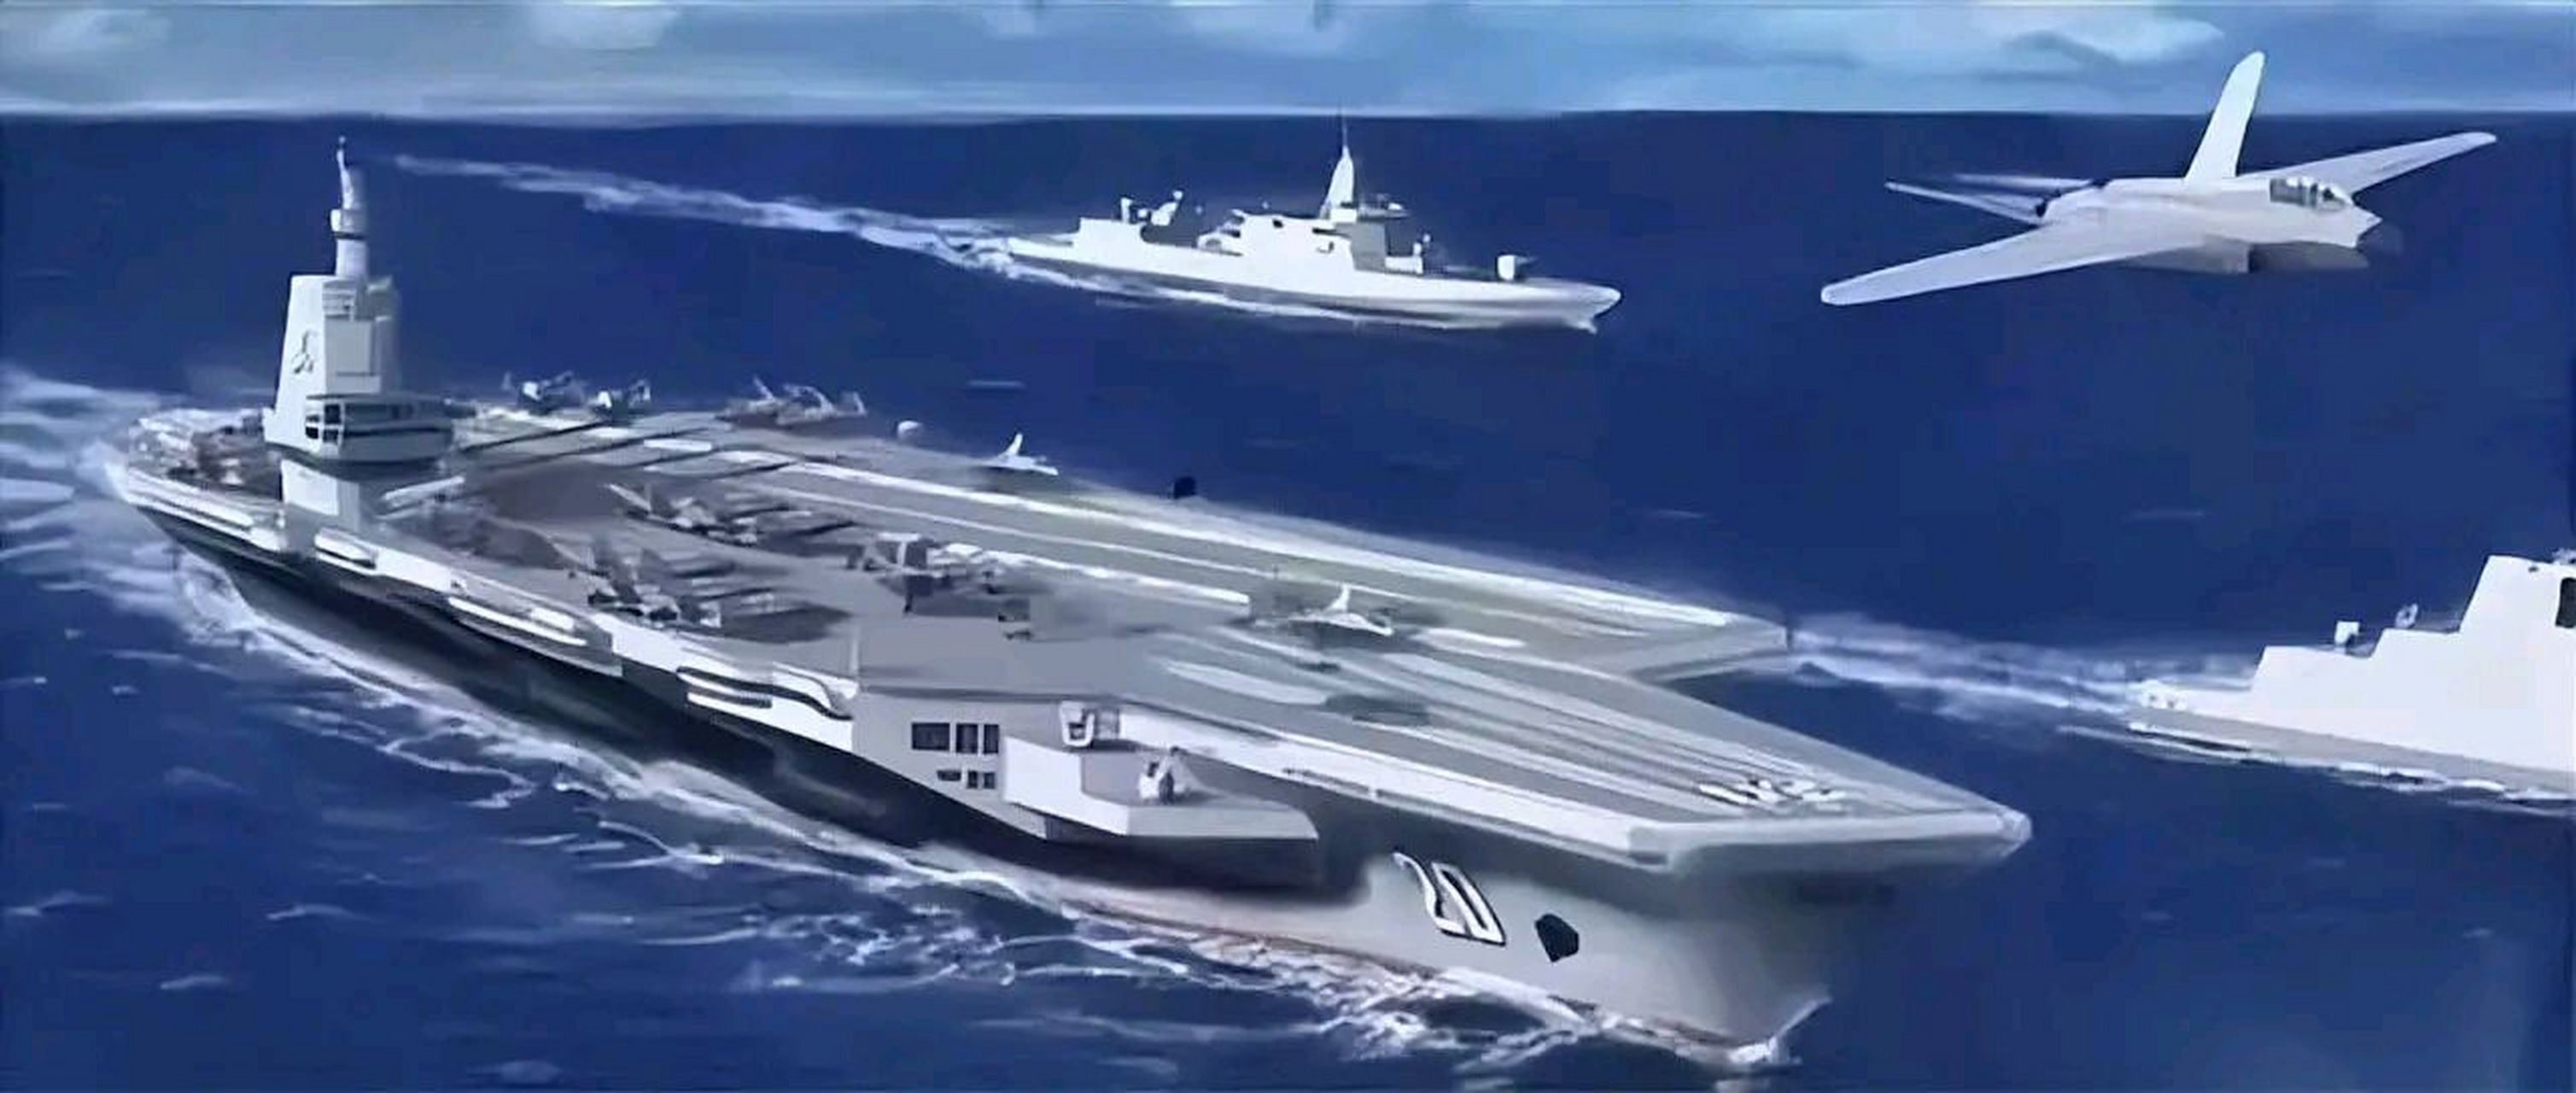 美专家:中国的004型航母,预计十一万吨,动力系统采用核动力,将由中船